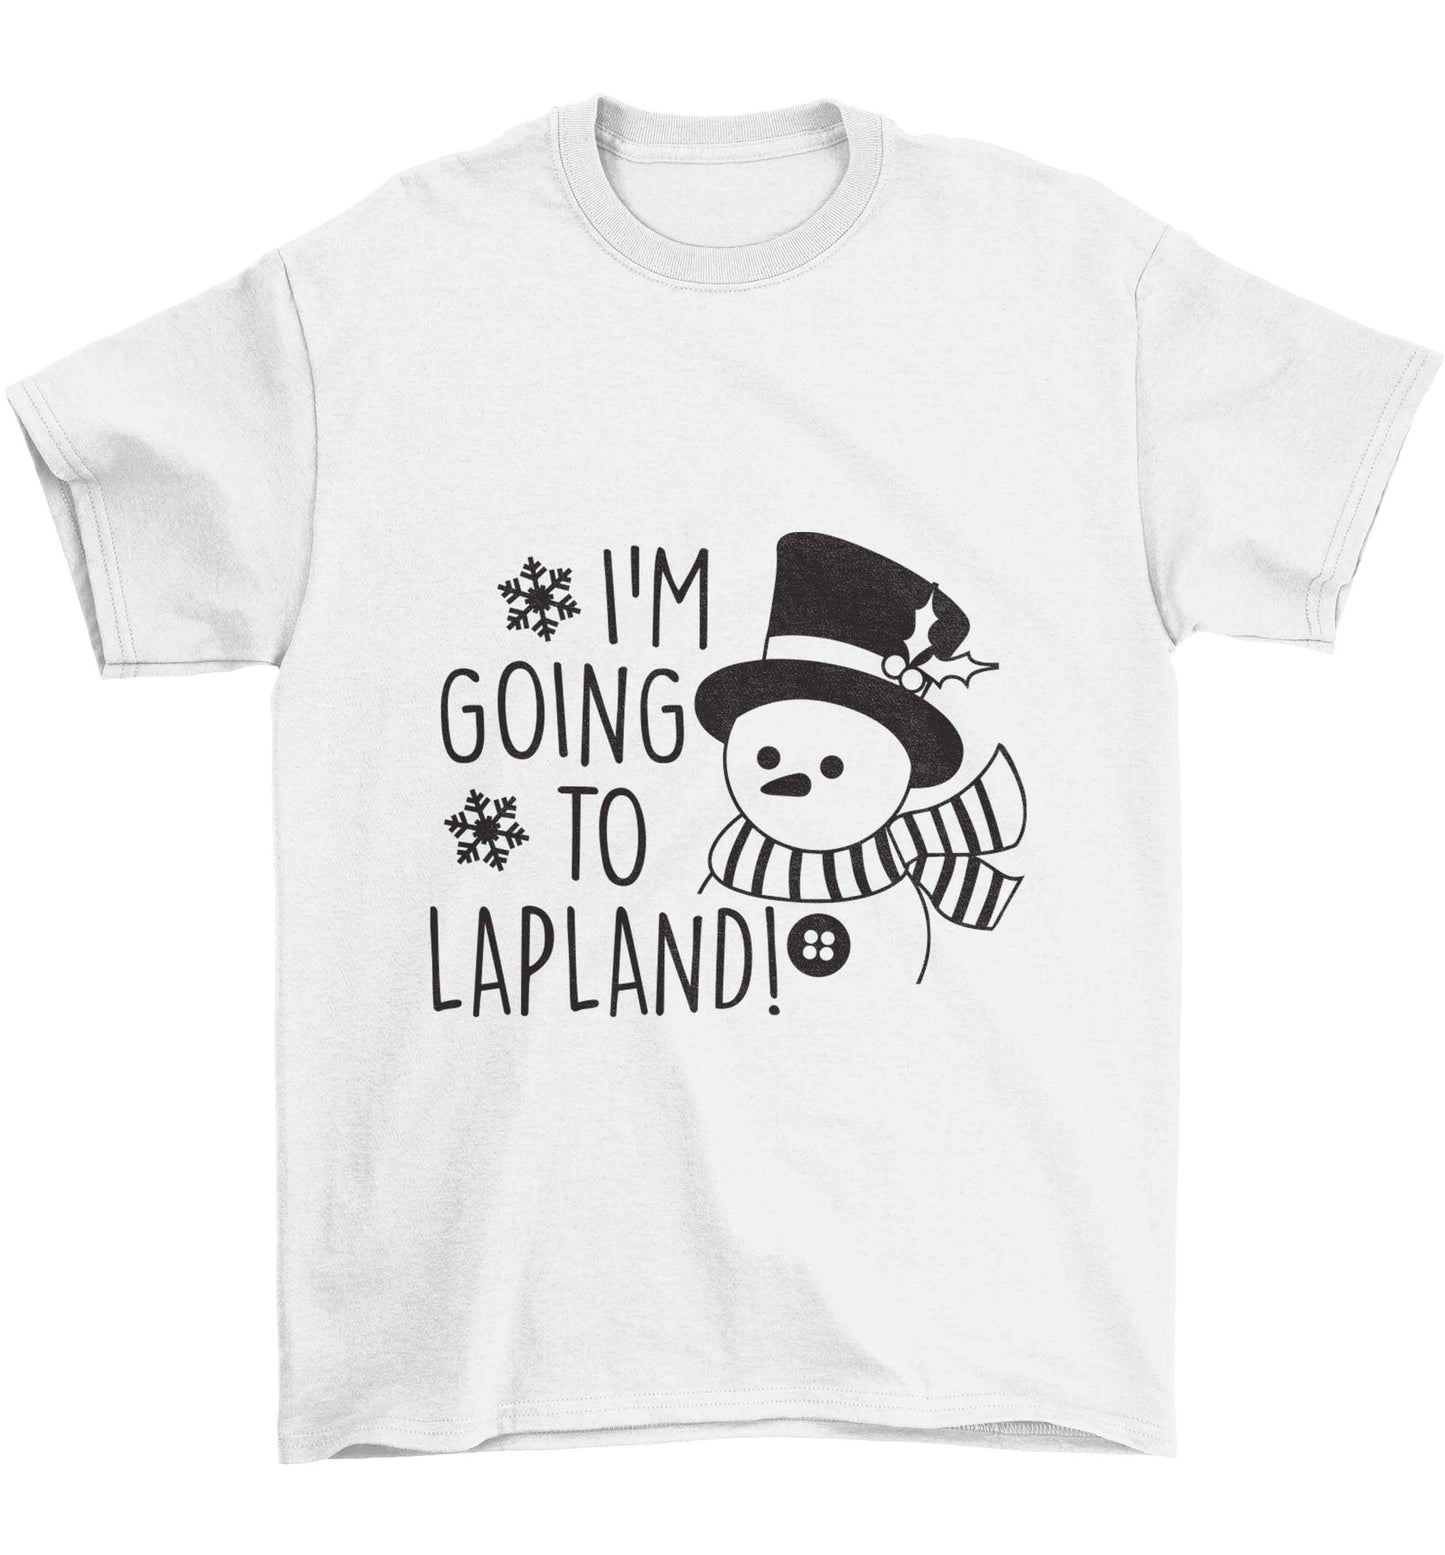 I'm going to Lapland Children's white Tshirt 12-13 Years